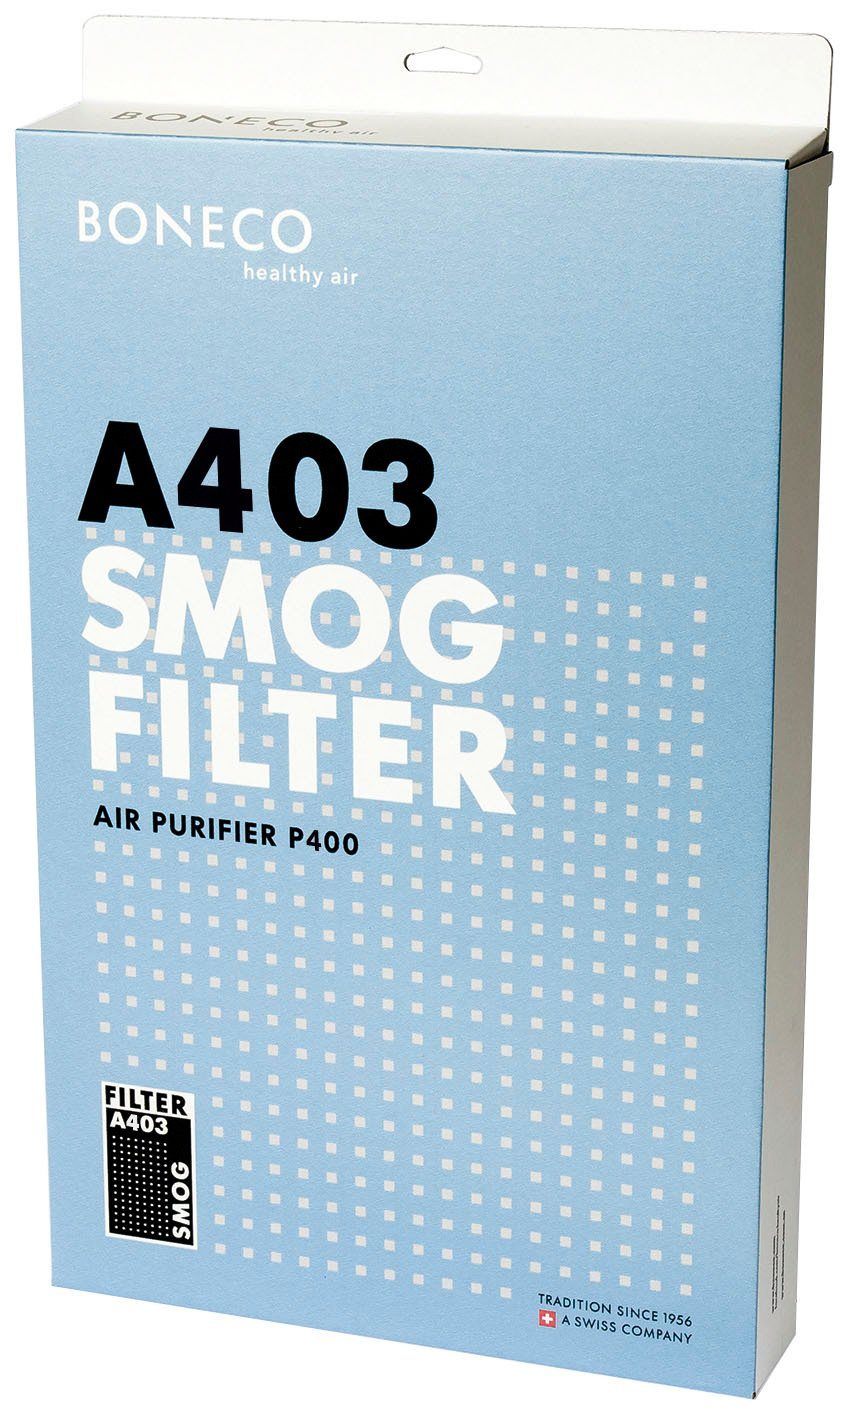 Boneco Kombifilter Smog Filter P400 Luftreiniger für A403, Zubehör